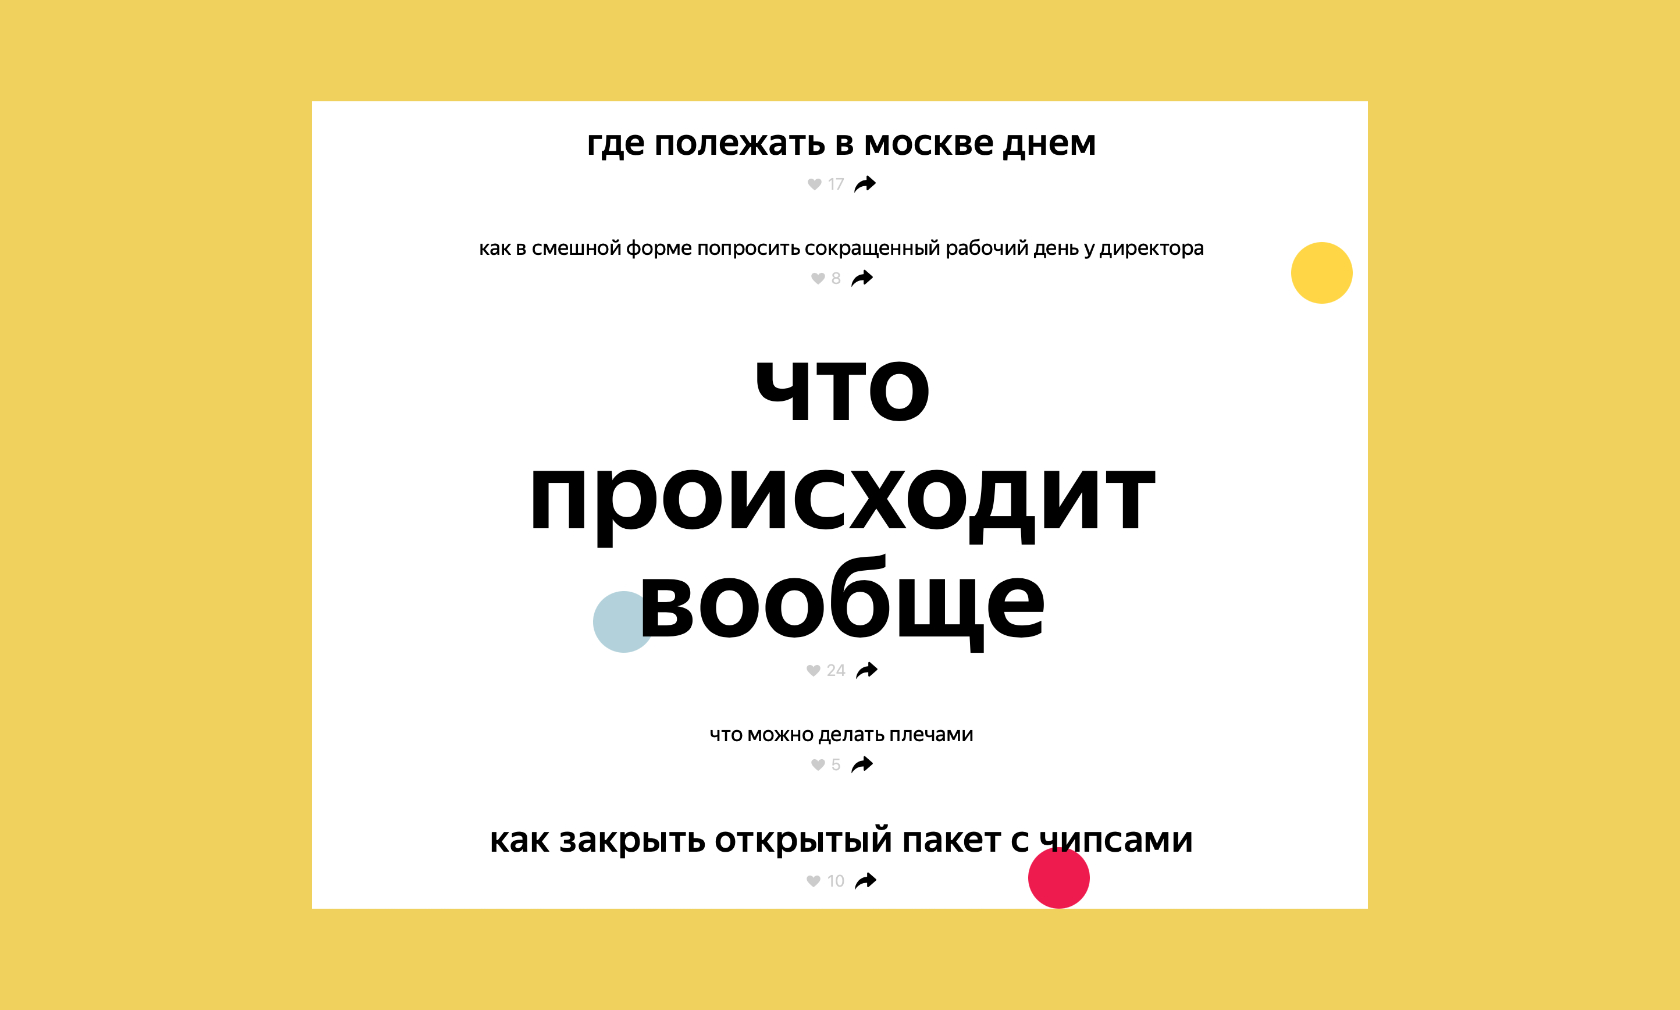 «Пройти тест на что-нибудь»: Яндекс собрал самые смешные поисковые запросы